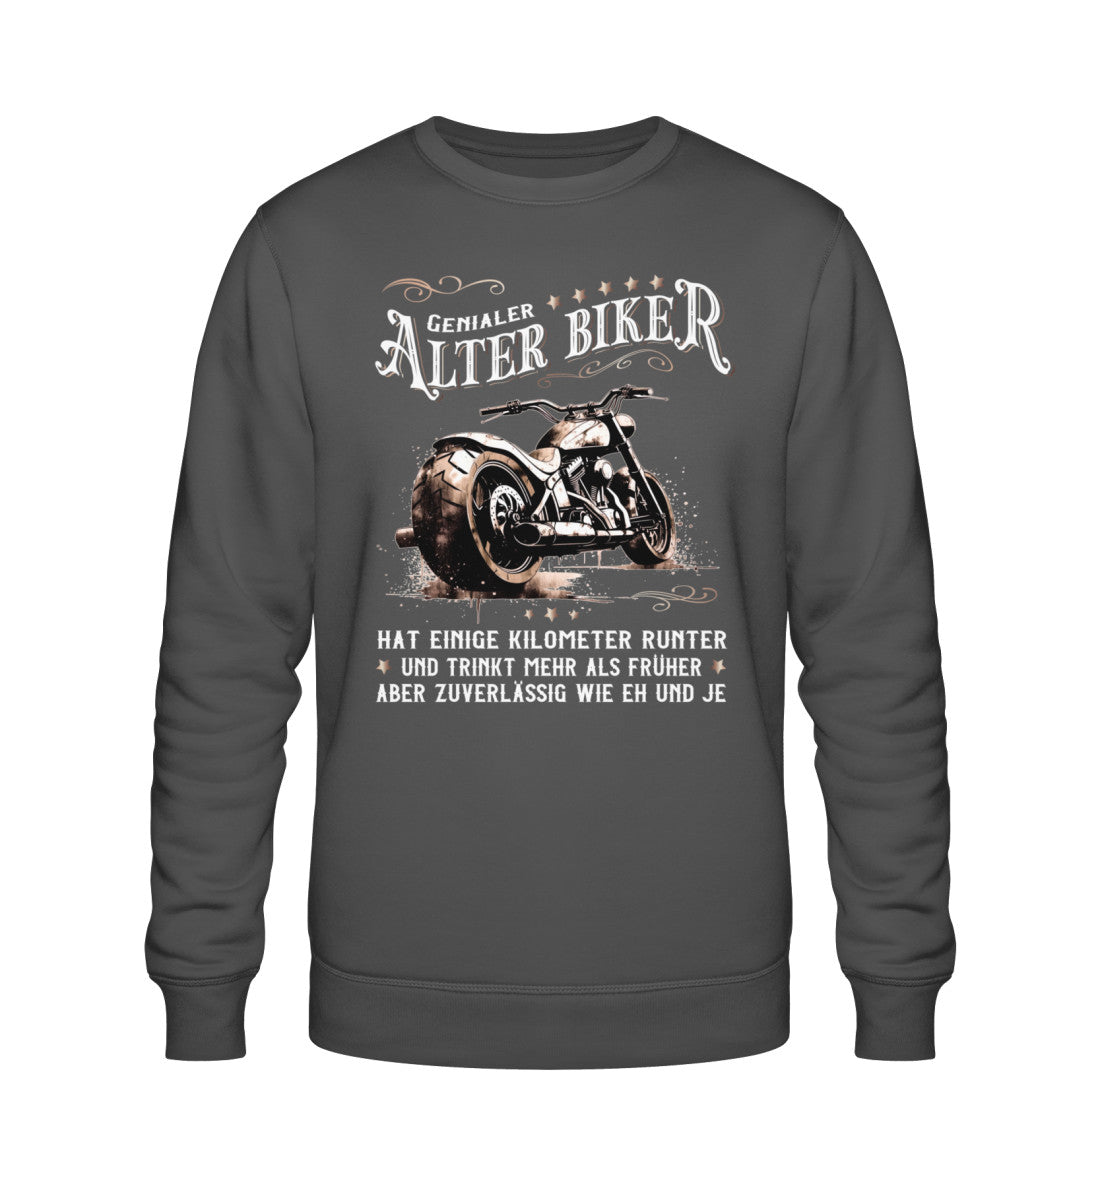 Ein Biker Sweatshirt für Motorradfahrer von Wingbikers mit dem Aufdruck, Alter Biker - Einige Kilometer runter, trinkt mehr - aber zuverlässig wie eh und je - in dunkelgrau.